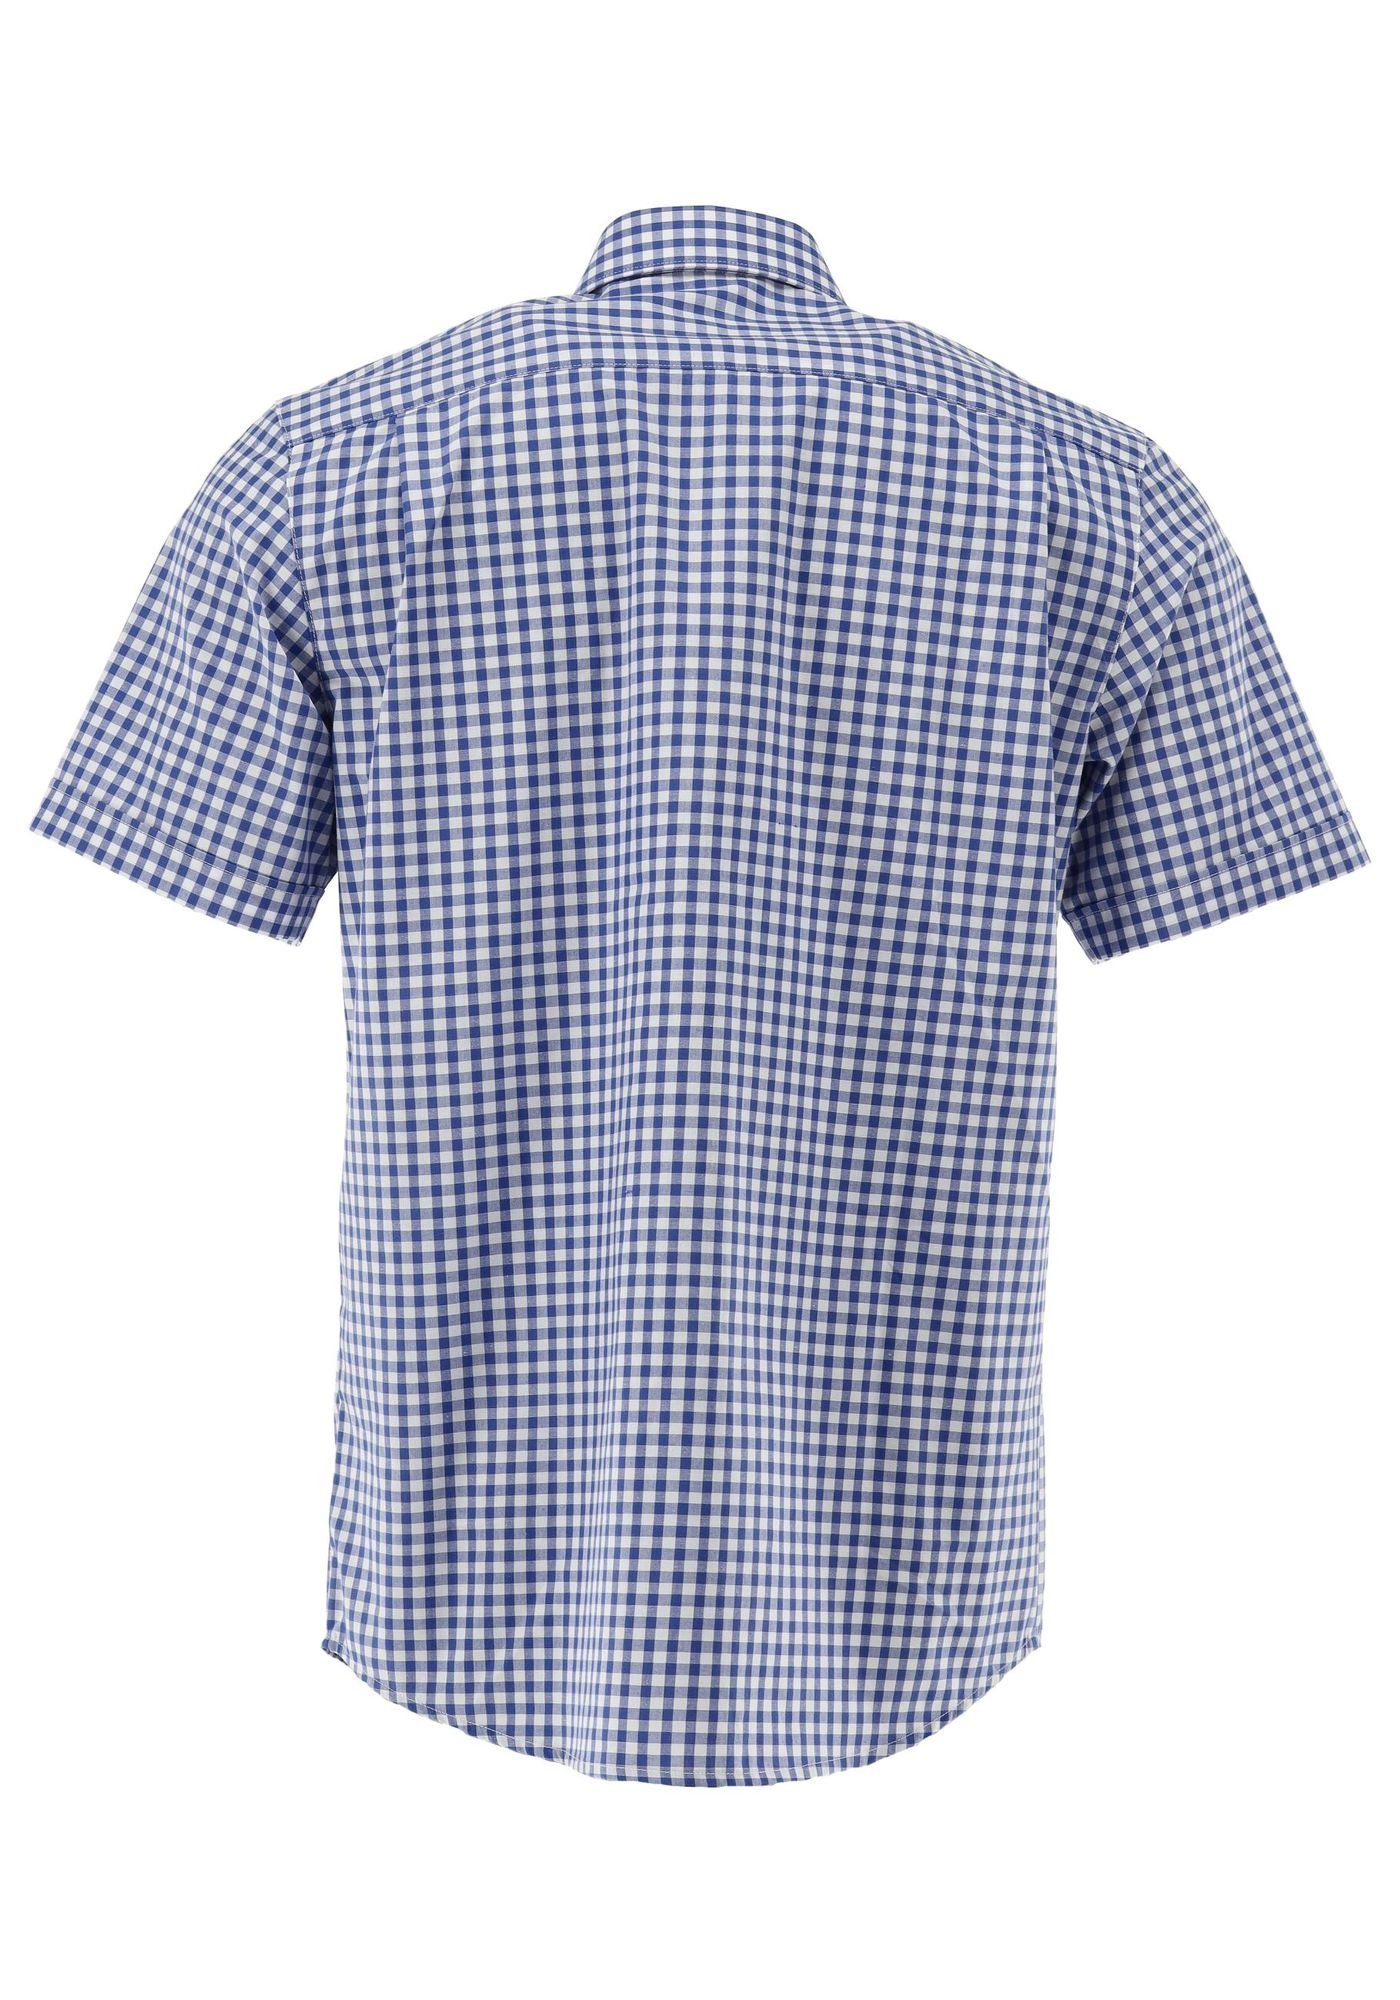 mit OS-Trachten Brusttasche mit aufgesetzter Trachtenhemd Kurzarmhemd mittelblau Hirsch-Stickerei Zihul